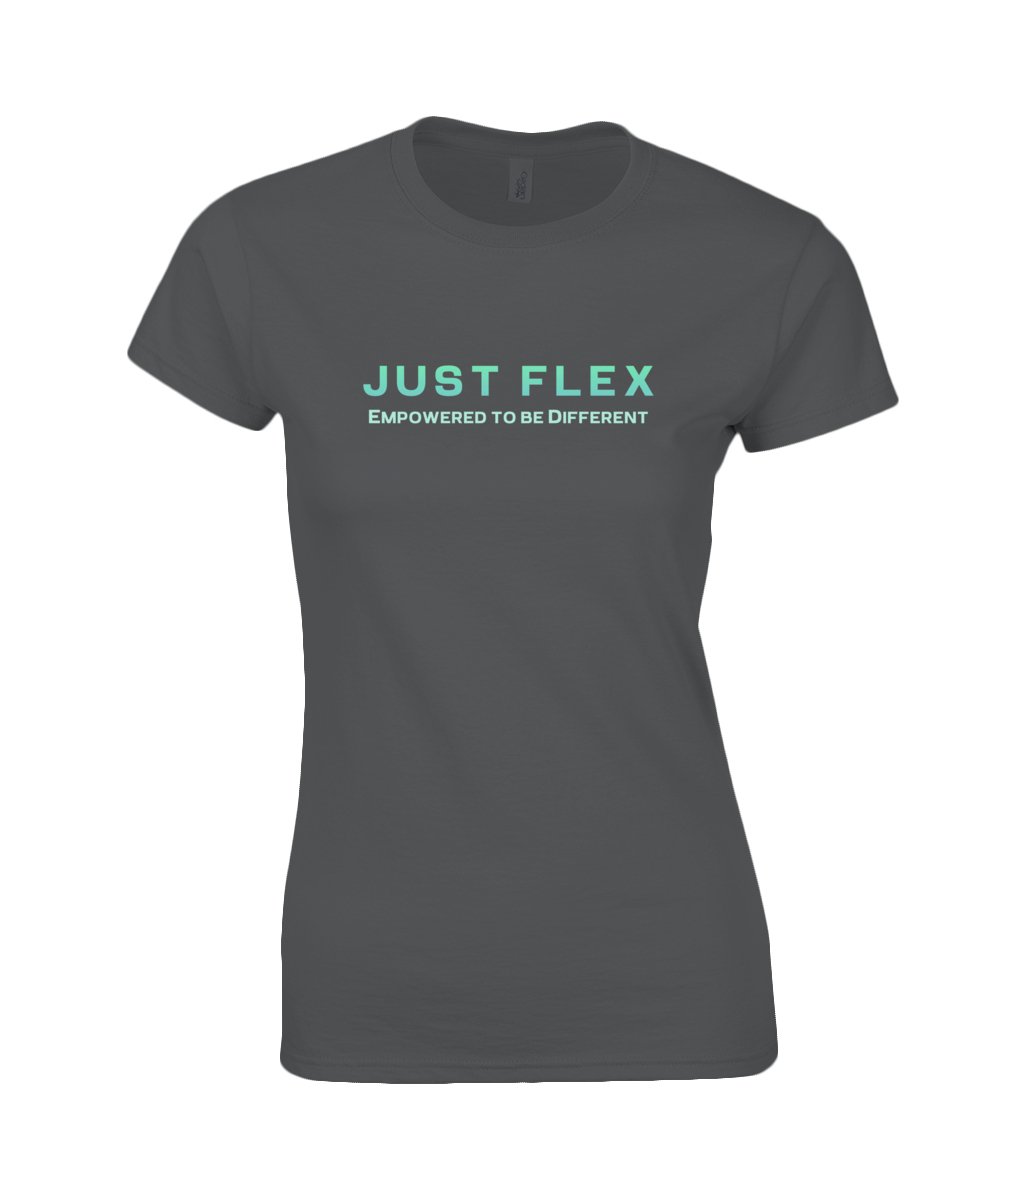 Just Flex - Empowered To Be Different Premium Cotton T - Shirt - Just Flex